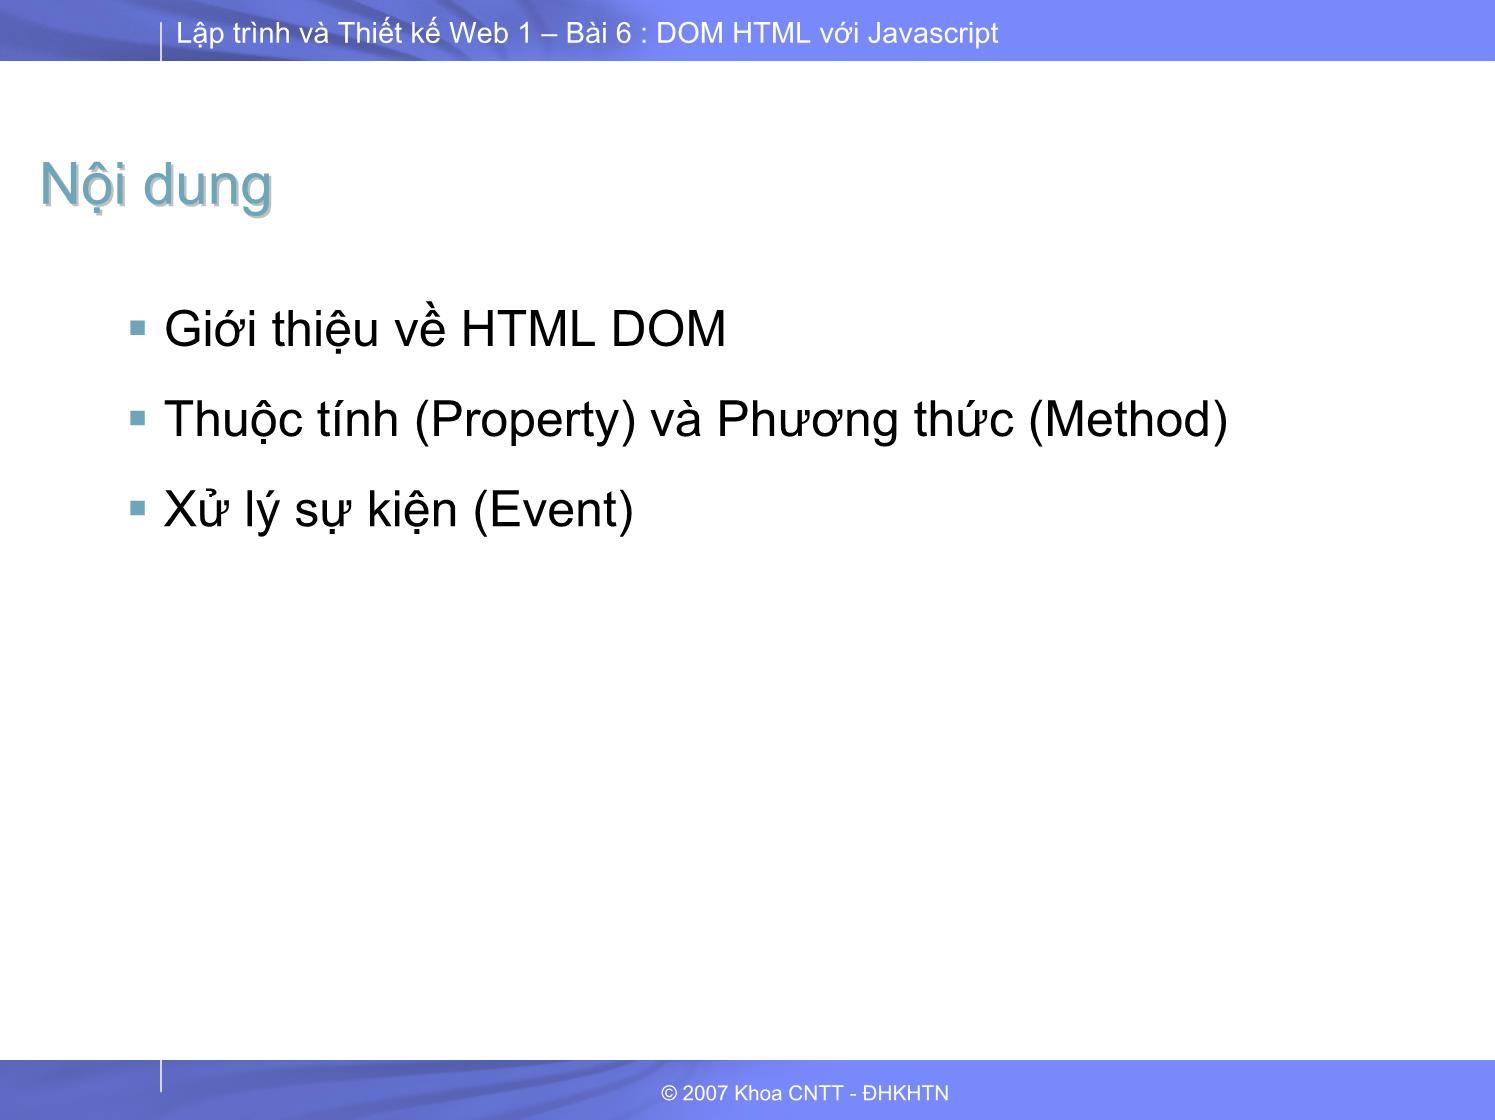 Lập trình và thiết kế Web 1 - Bài 6 - Phần 2/2: HTML DOM với JavaScript trang 2